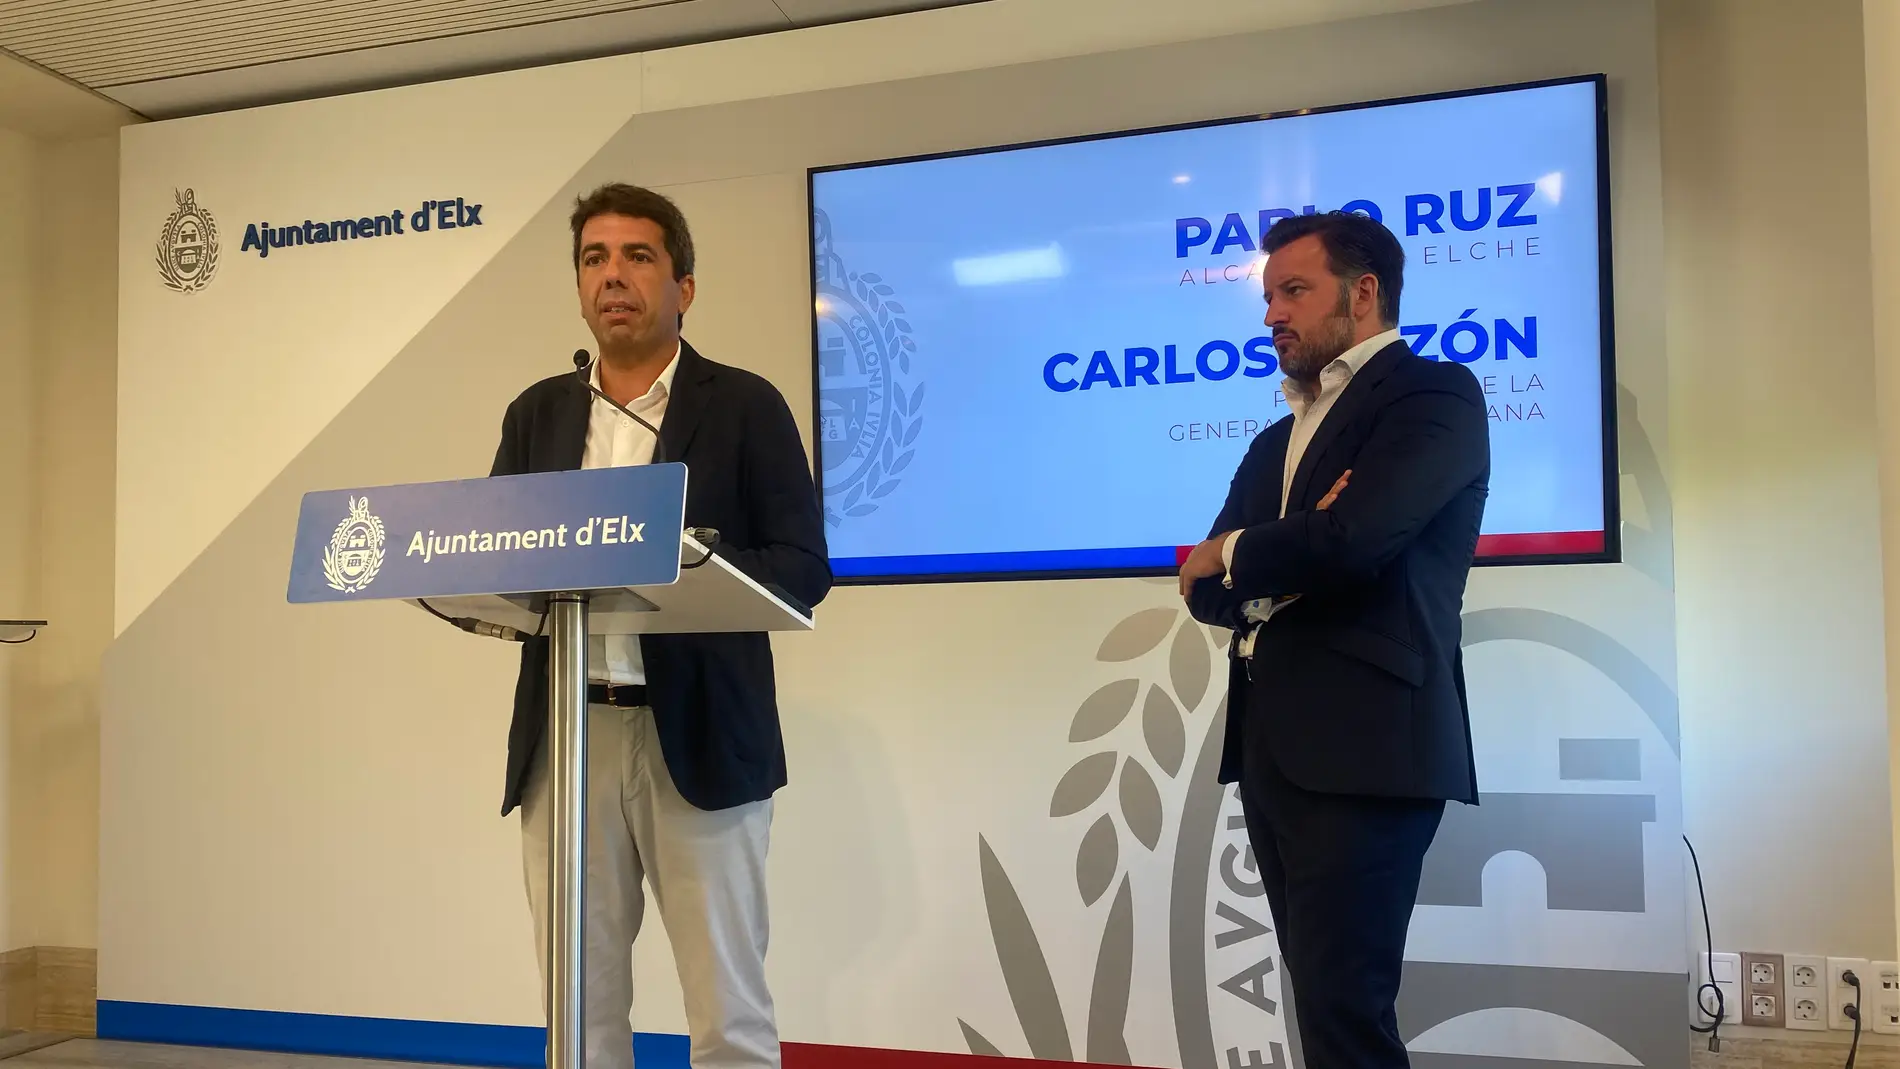 El presidente de la Generalitat Valenciana, Carlos Mazón, junto al alcalde de Elche, Pablo Ruz.